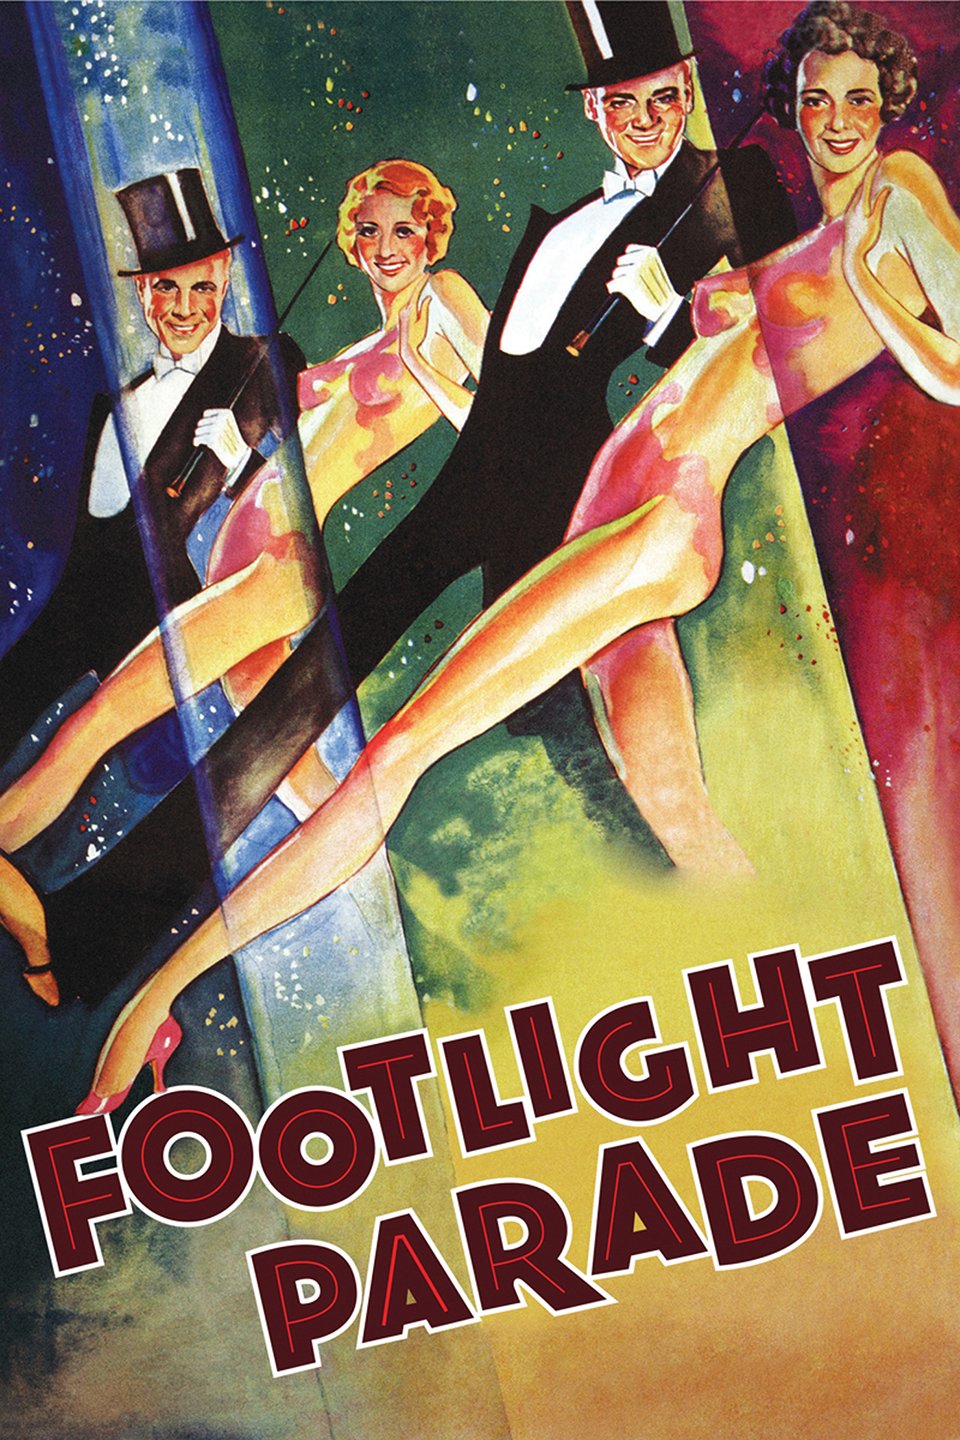 footlight parade 1933 download